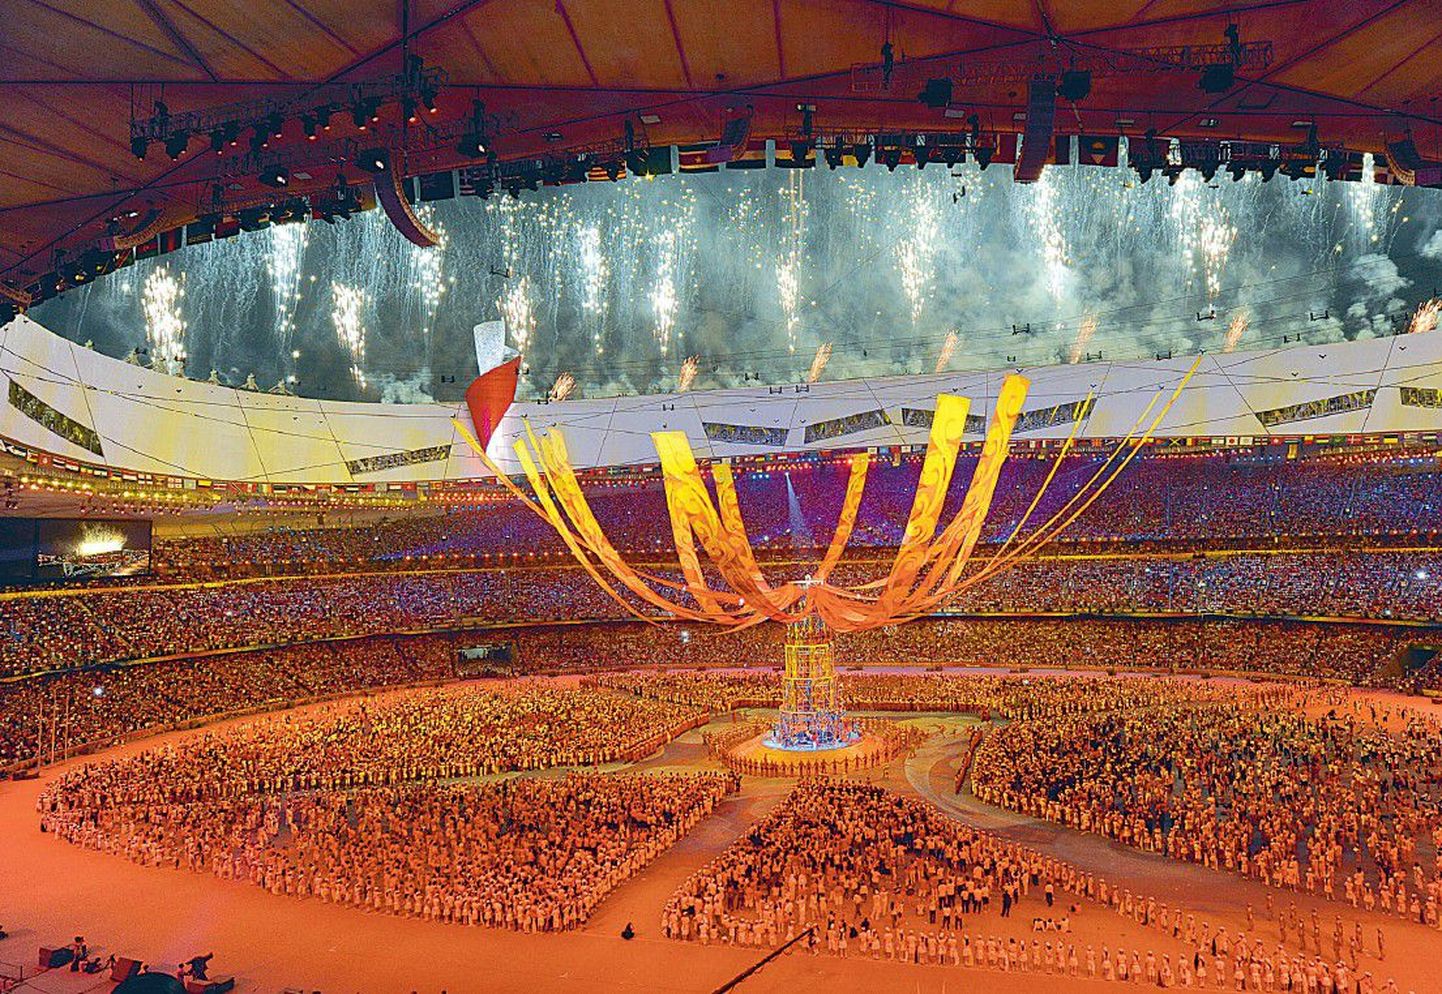 Kõik olümpiastaadionil viibinud pealtvaatajad ja sportlased said sarnaselt avatseremooniaga unustamatute etteastete ja võimsa tulešõu osaliseks.